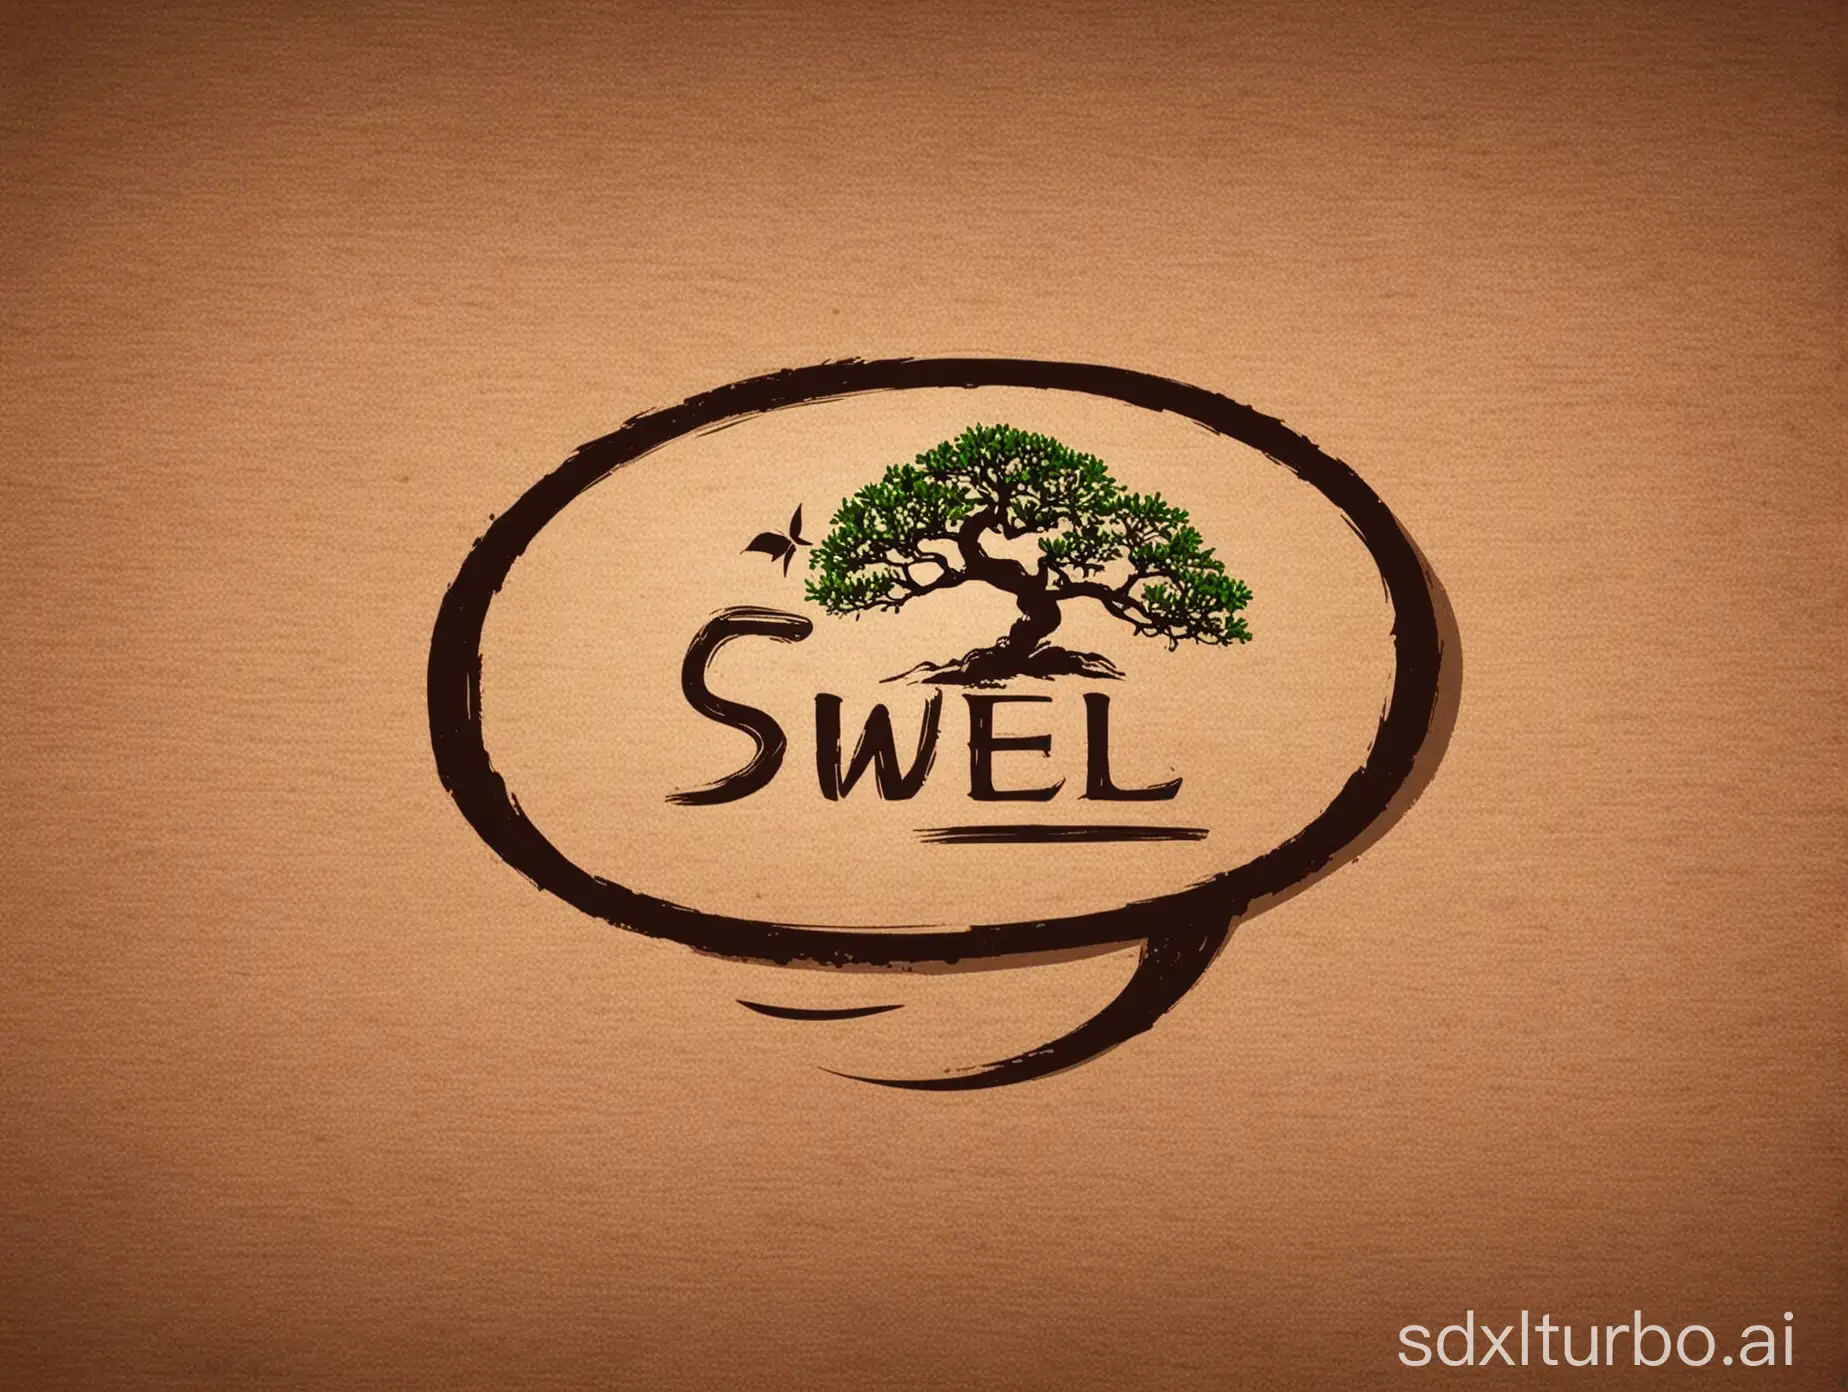 为"ESWELL"设计一个logo,这个logo主要用于户外体育用品和盆景花盆